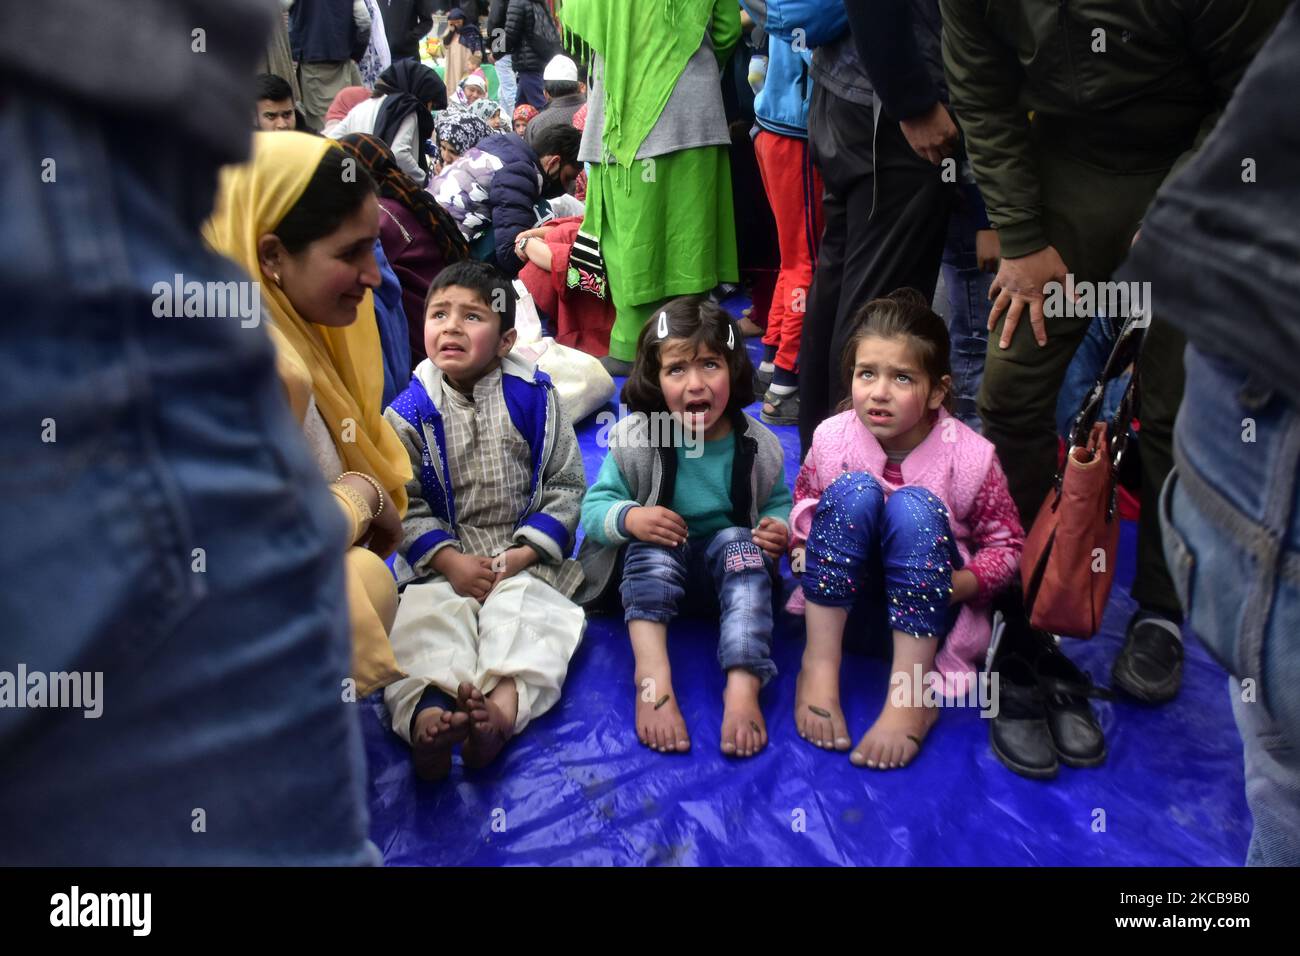 Les enfants de Kashmiri prennent un traitement de leech à la veille de Nauroz (nouvel an persan) à Srinagar, en Inde, au Cachemire le 21 mars 2021. la thérapie de leech connue localement « Derkhe Illaaj » est l'une des plus anciennes thérapies complémentaires, employées par Kashmir pour traiter diverses maladies de la peau, l'arthrite, les maux de tête chroniques, gelures et sinusite. (Photo de Muzamil Mattoo/NurPhoto) Banque D'Images